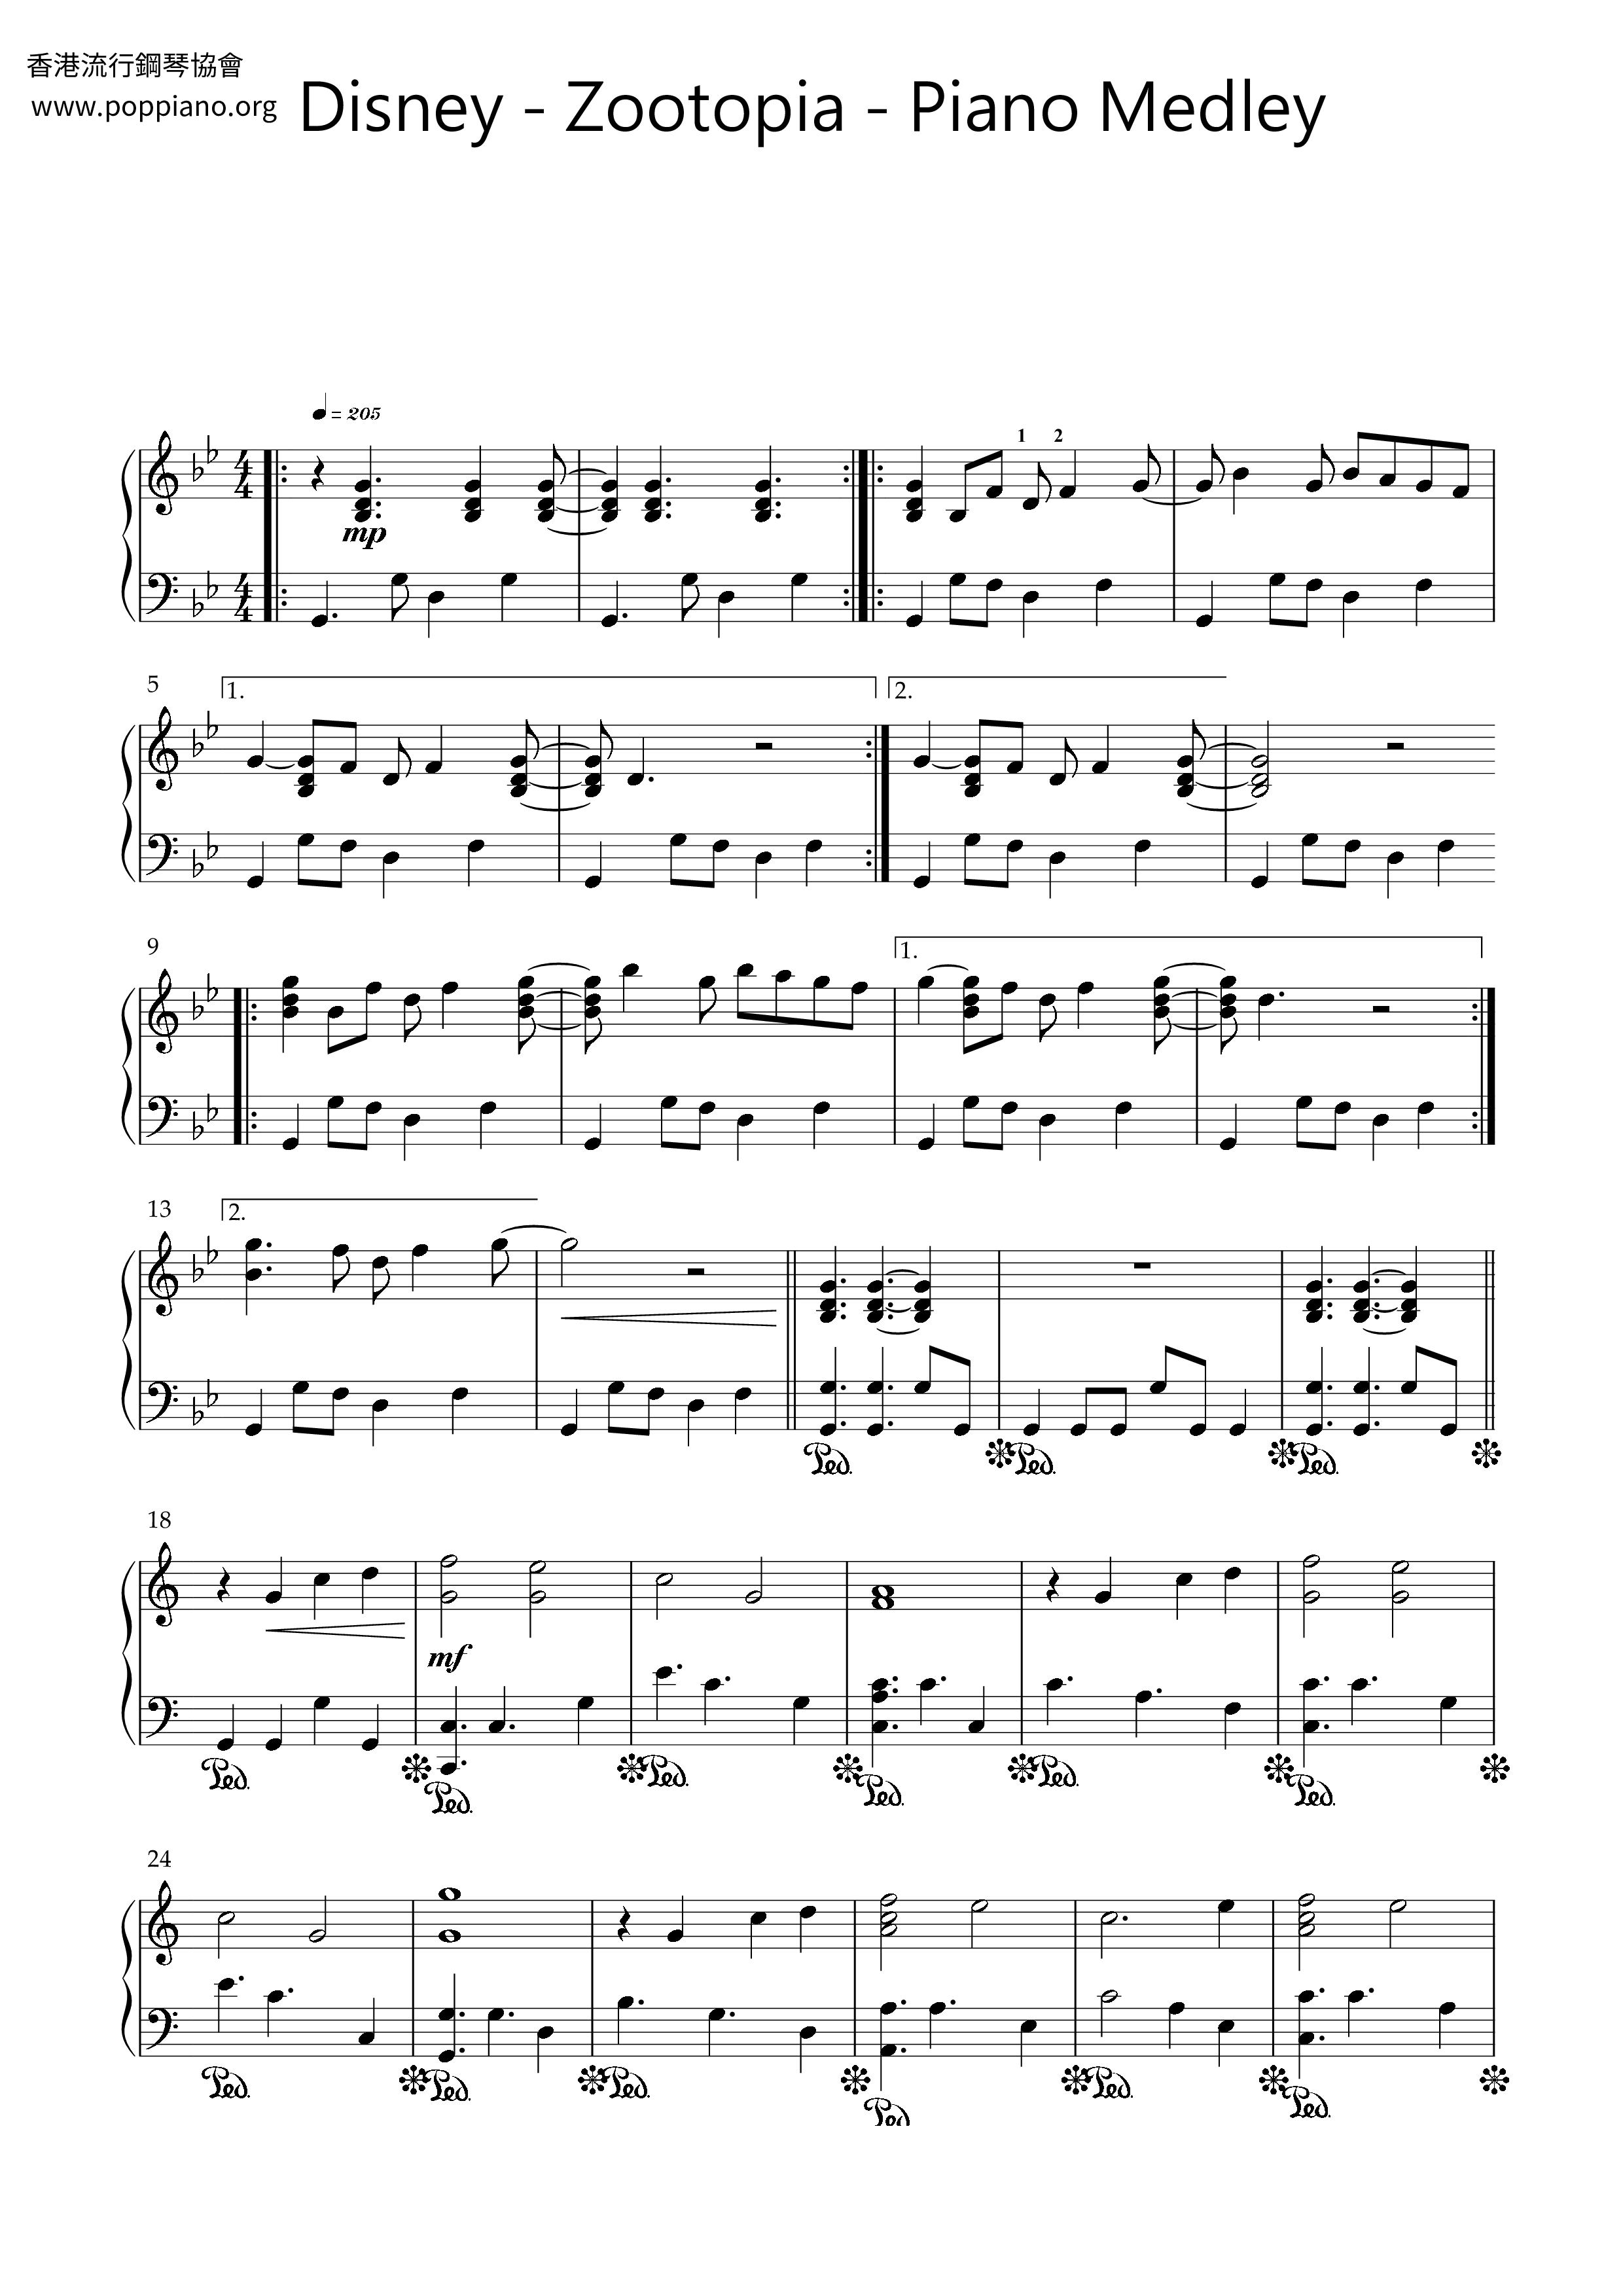 Zootopia - Piano Medley琴谱